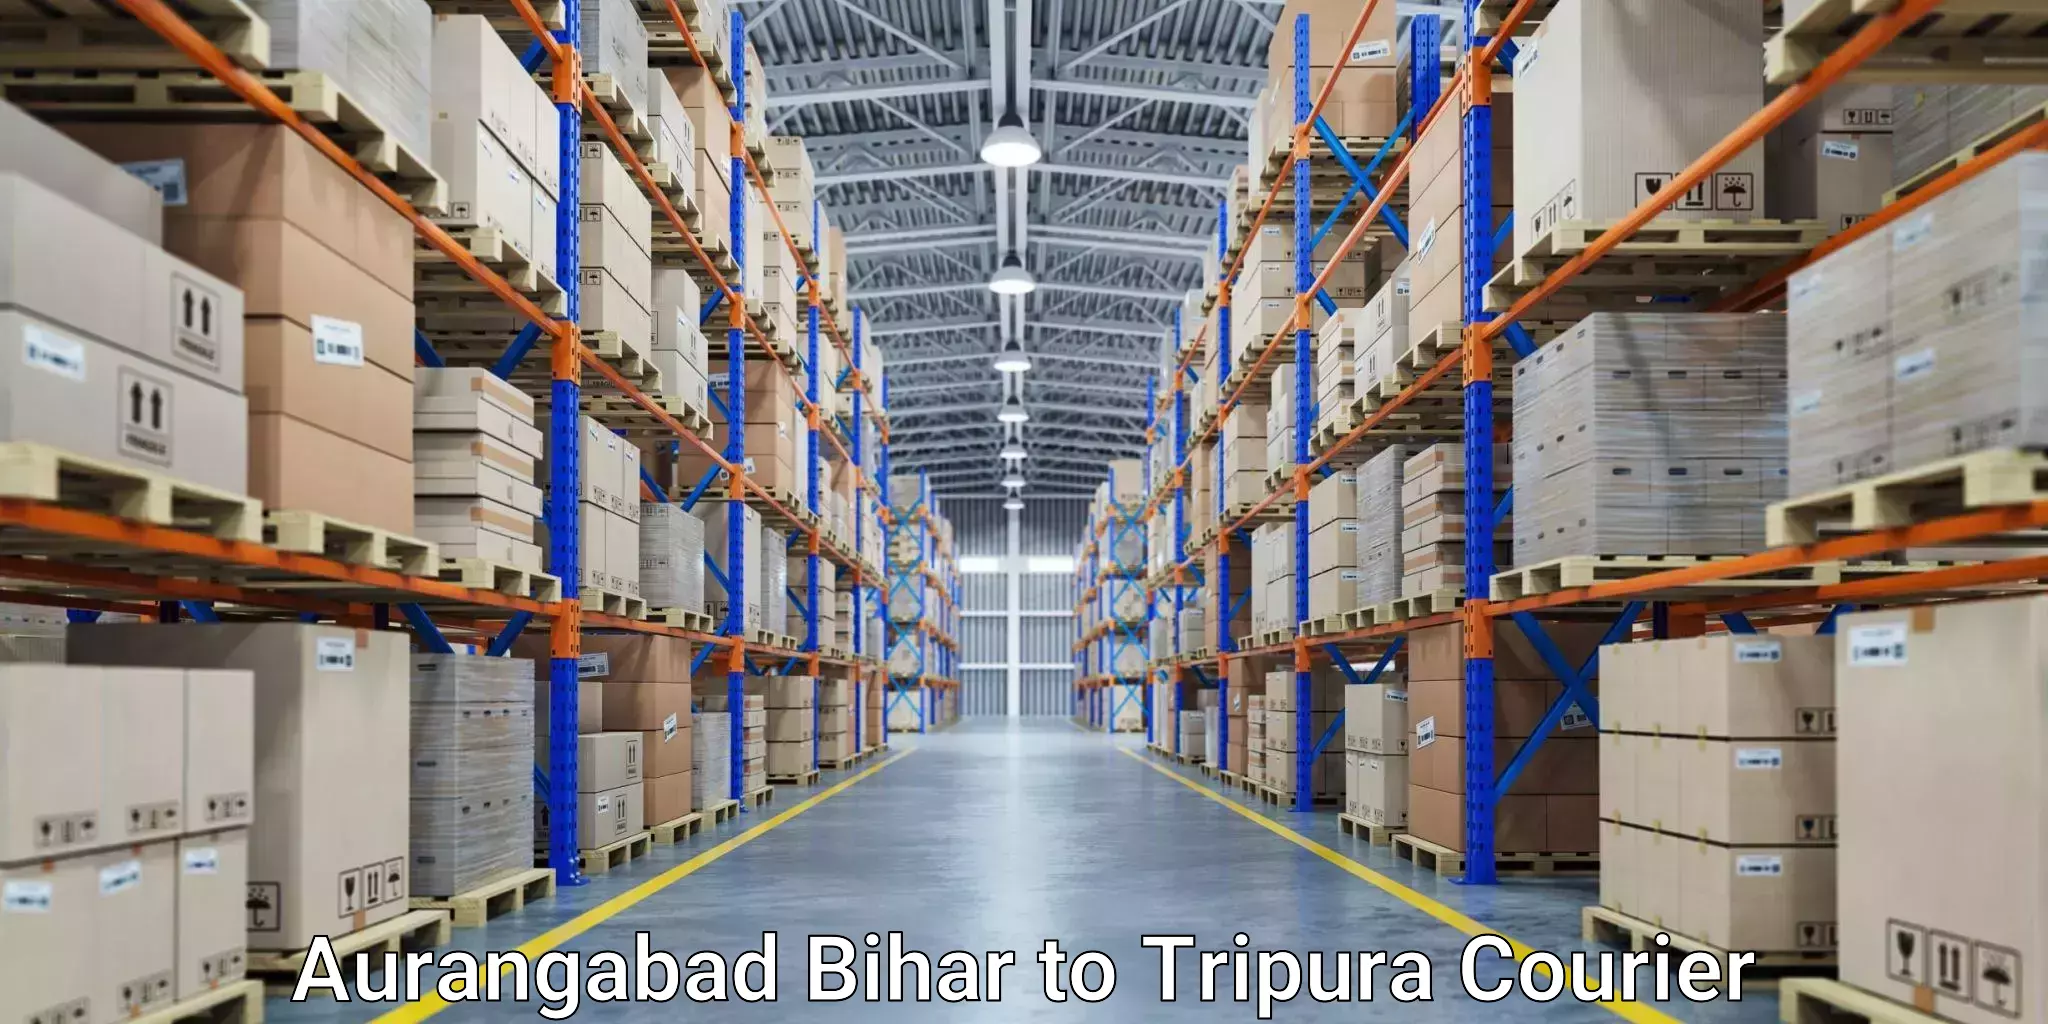 Flexible delivery scheduling Aurangabad Bihar to Dharmanagar